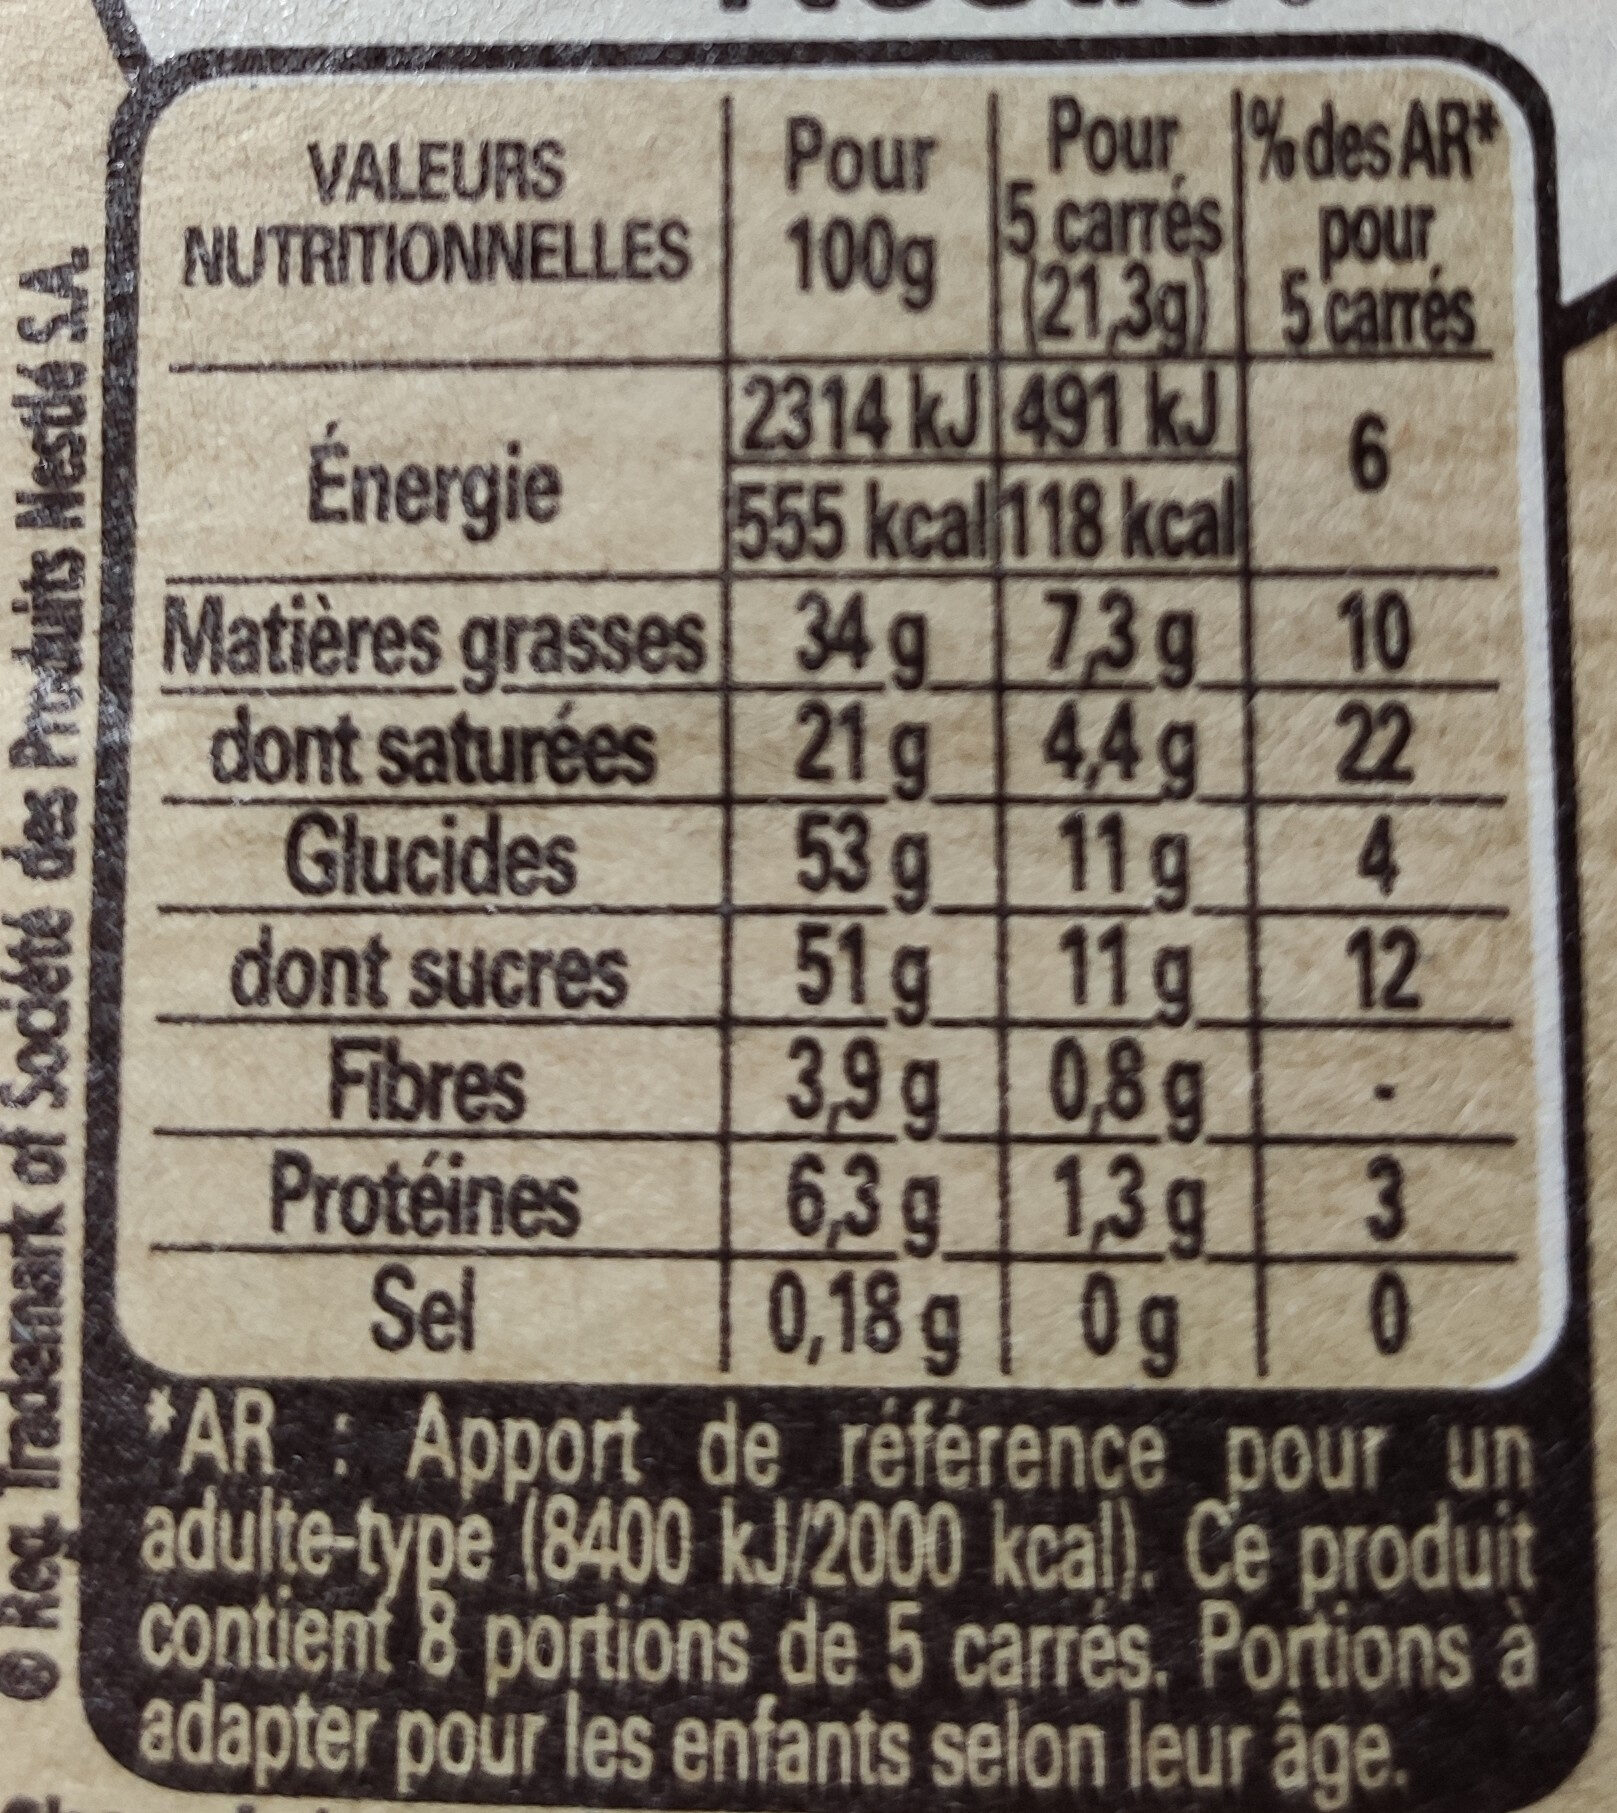 NESTLE DESSERT Chocolat au Lait - Informations nutritionnelles - fr